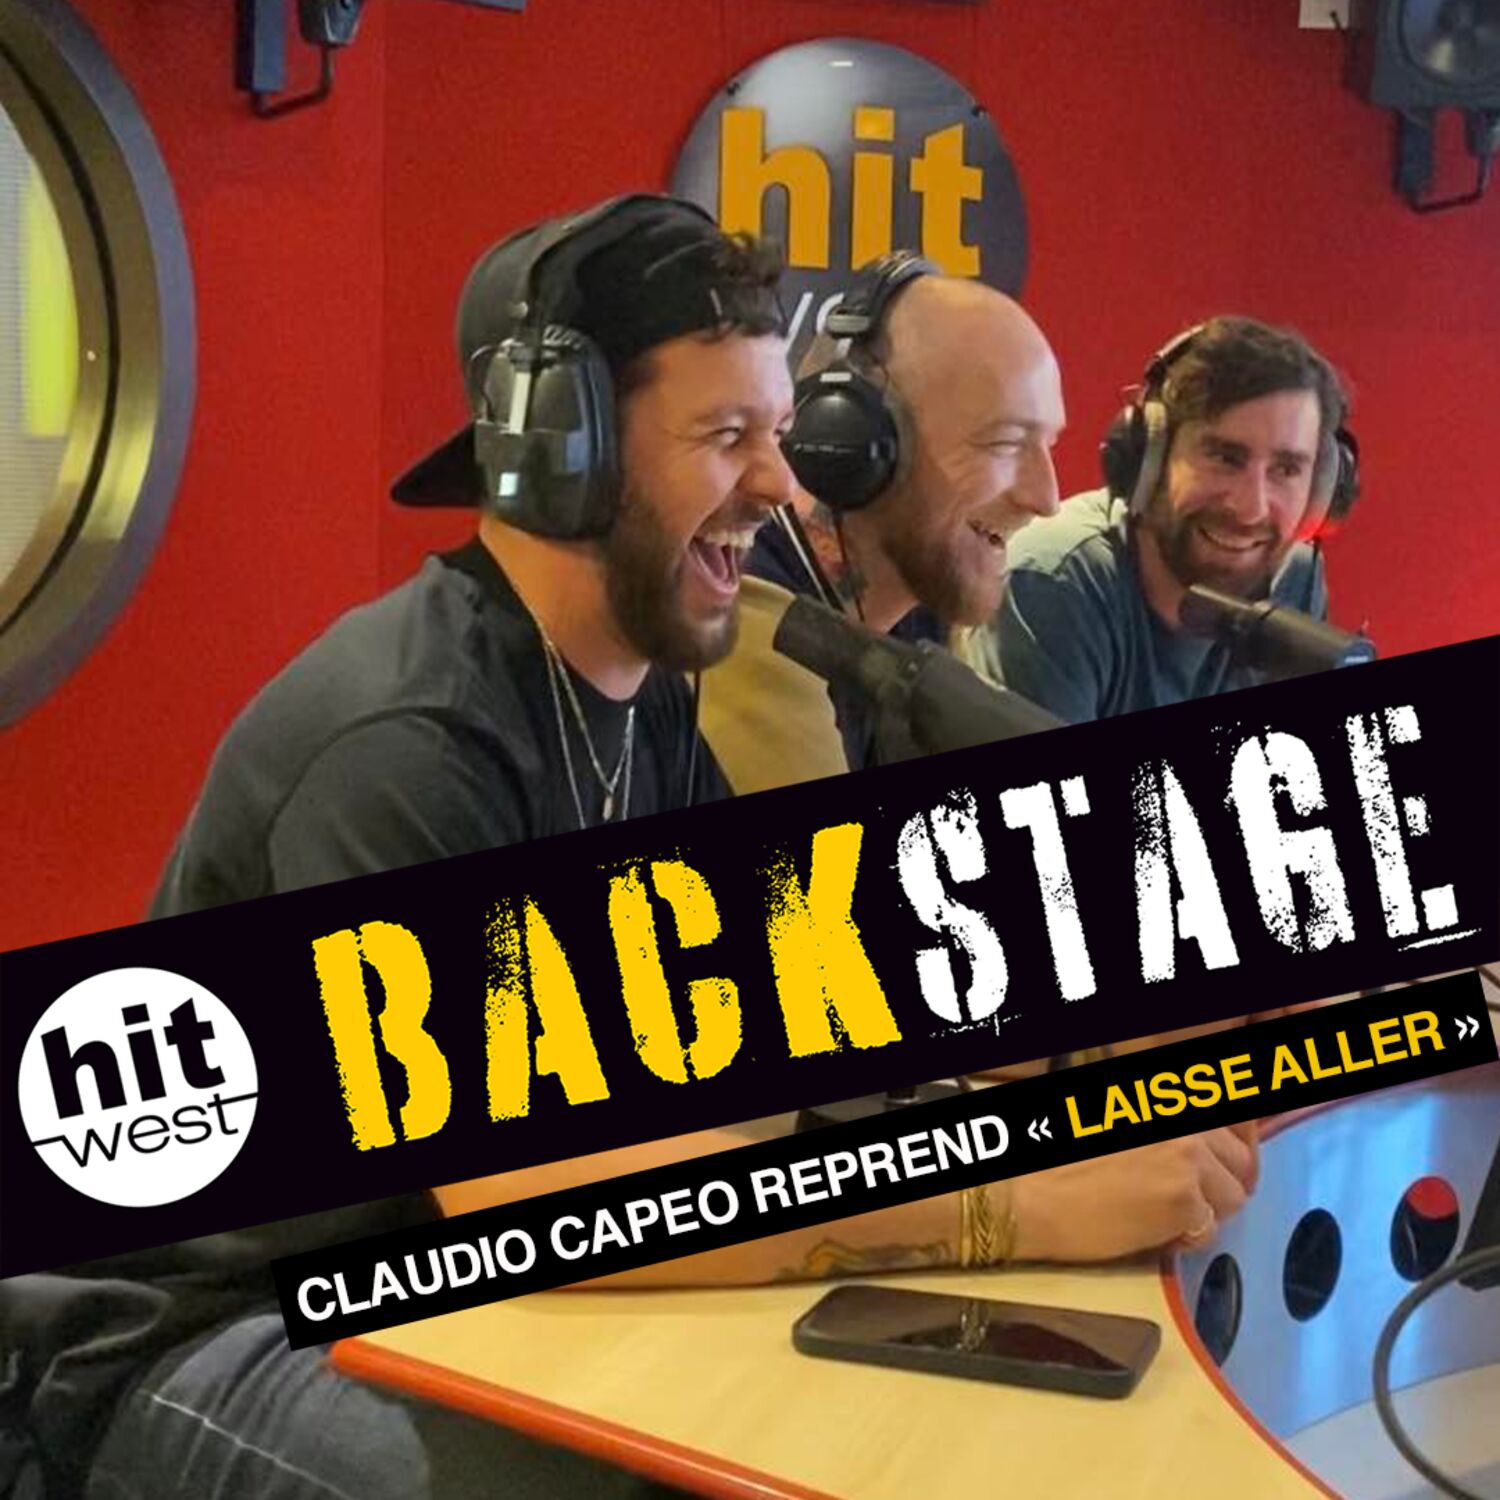 Claudio Capéo reprend "Laisse Aller" dans Backstage